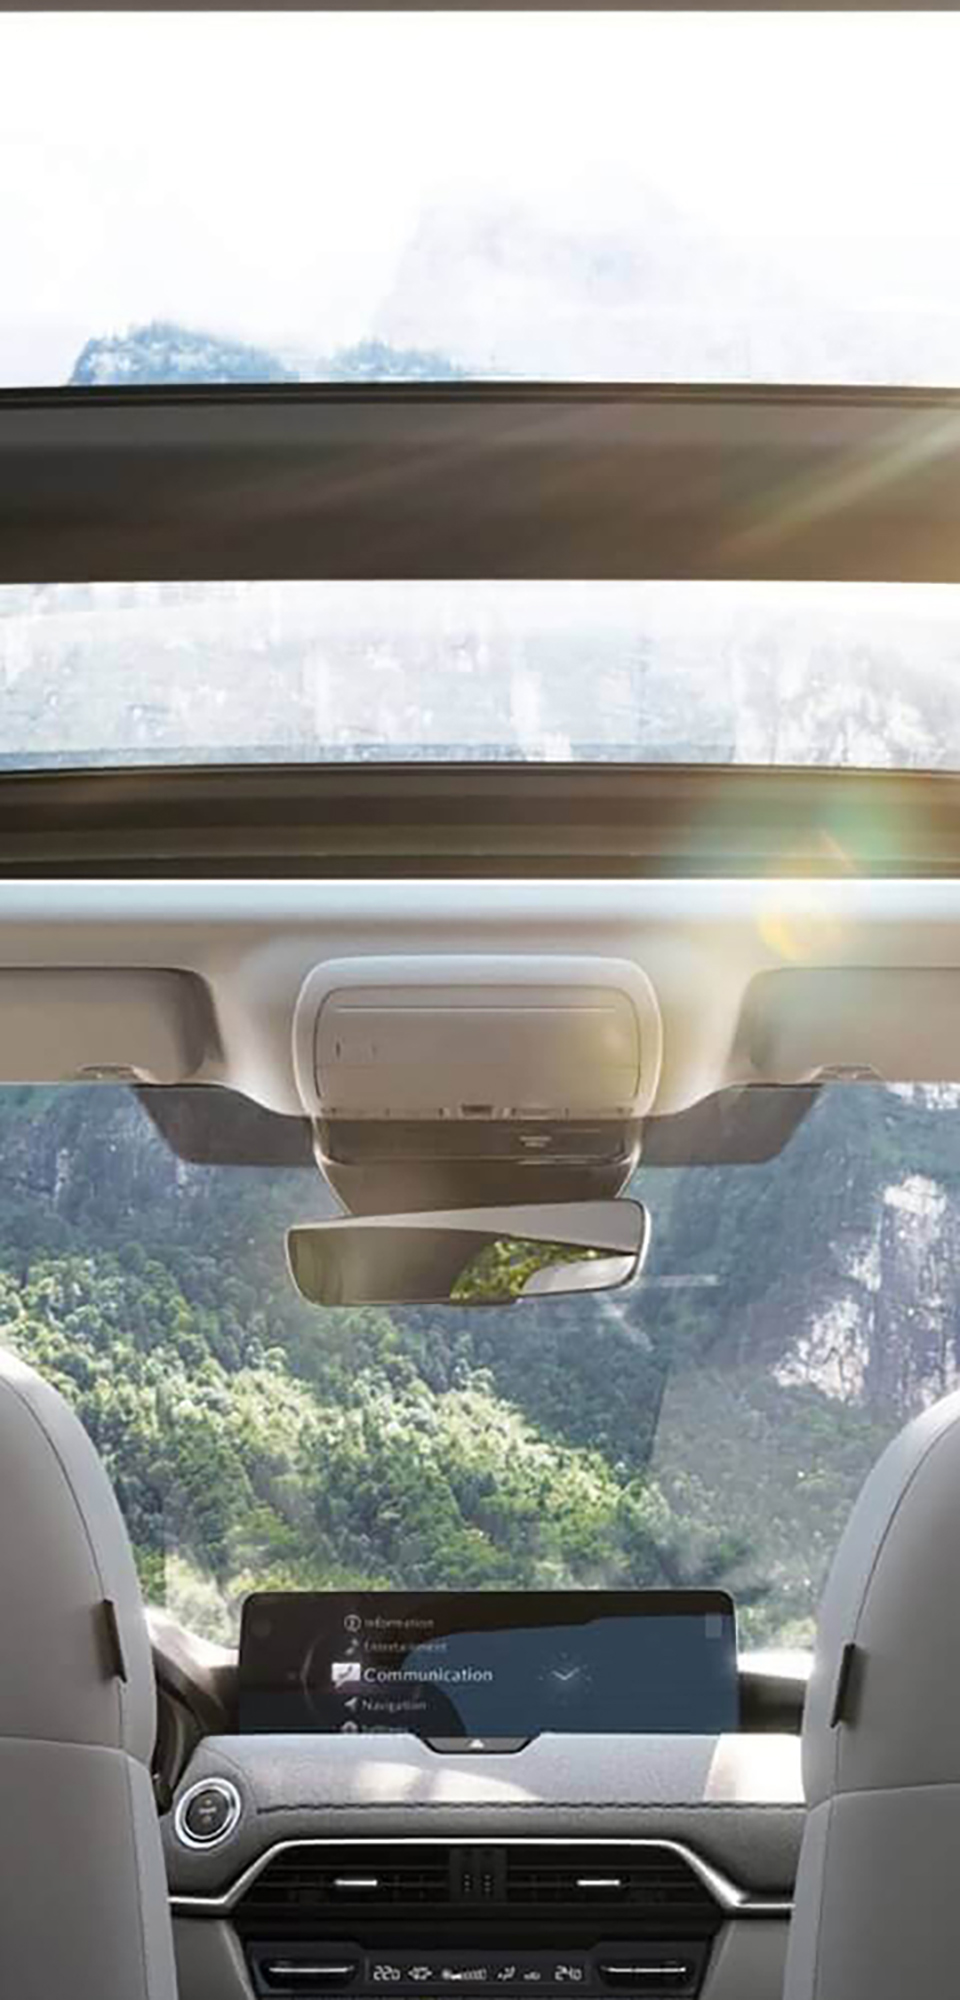 Prostorný interiér zcela nového plug-in hybridního SUV Mazda CX-60 s panoramatickým střešním oknem.